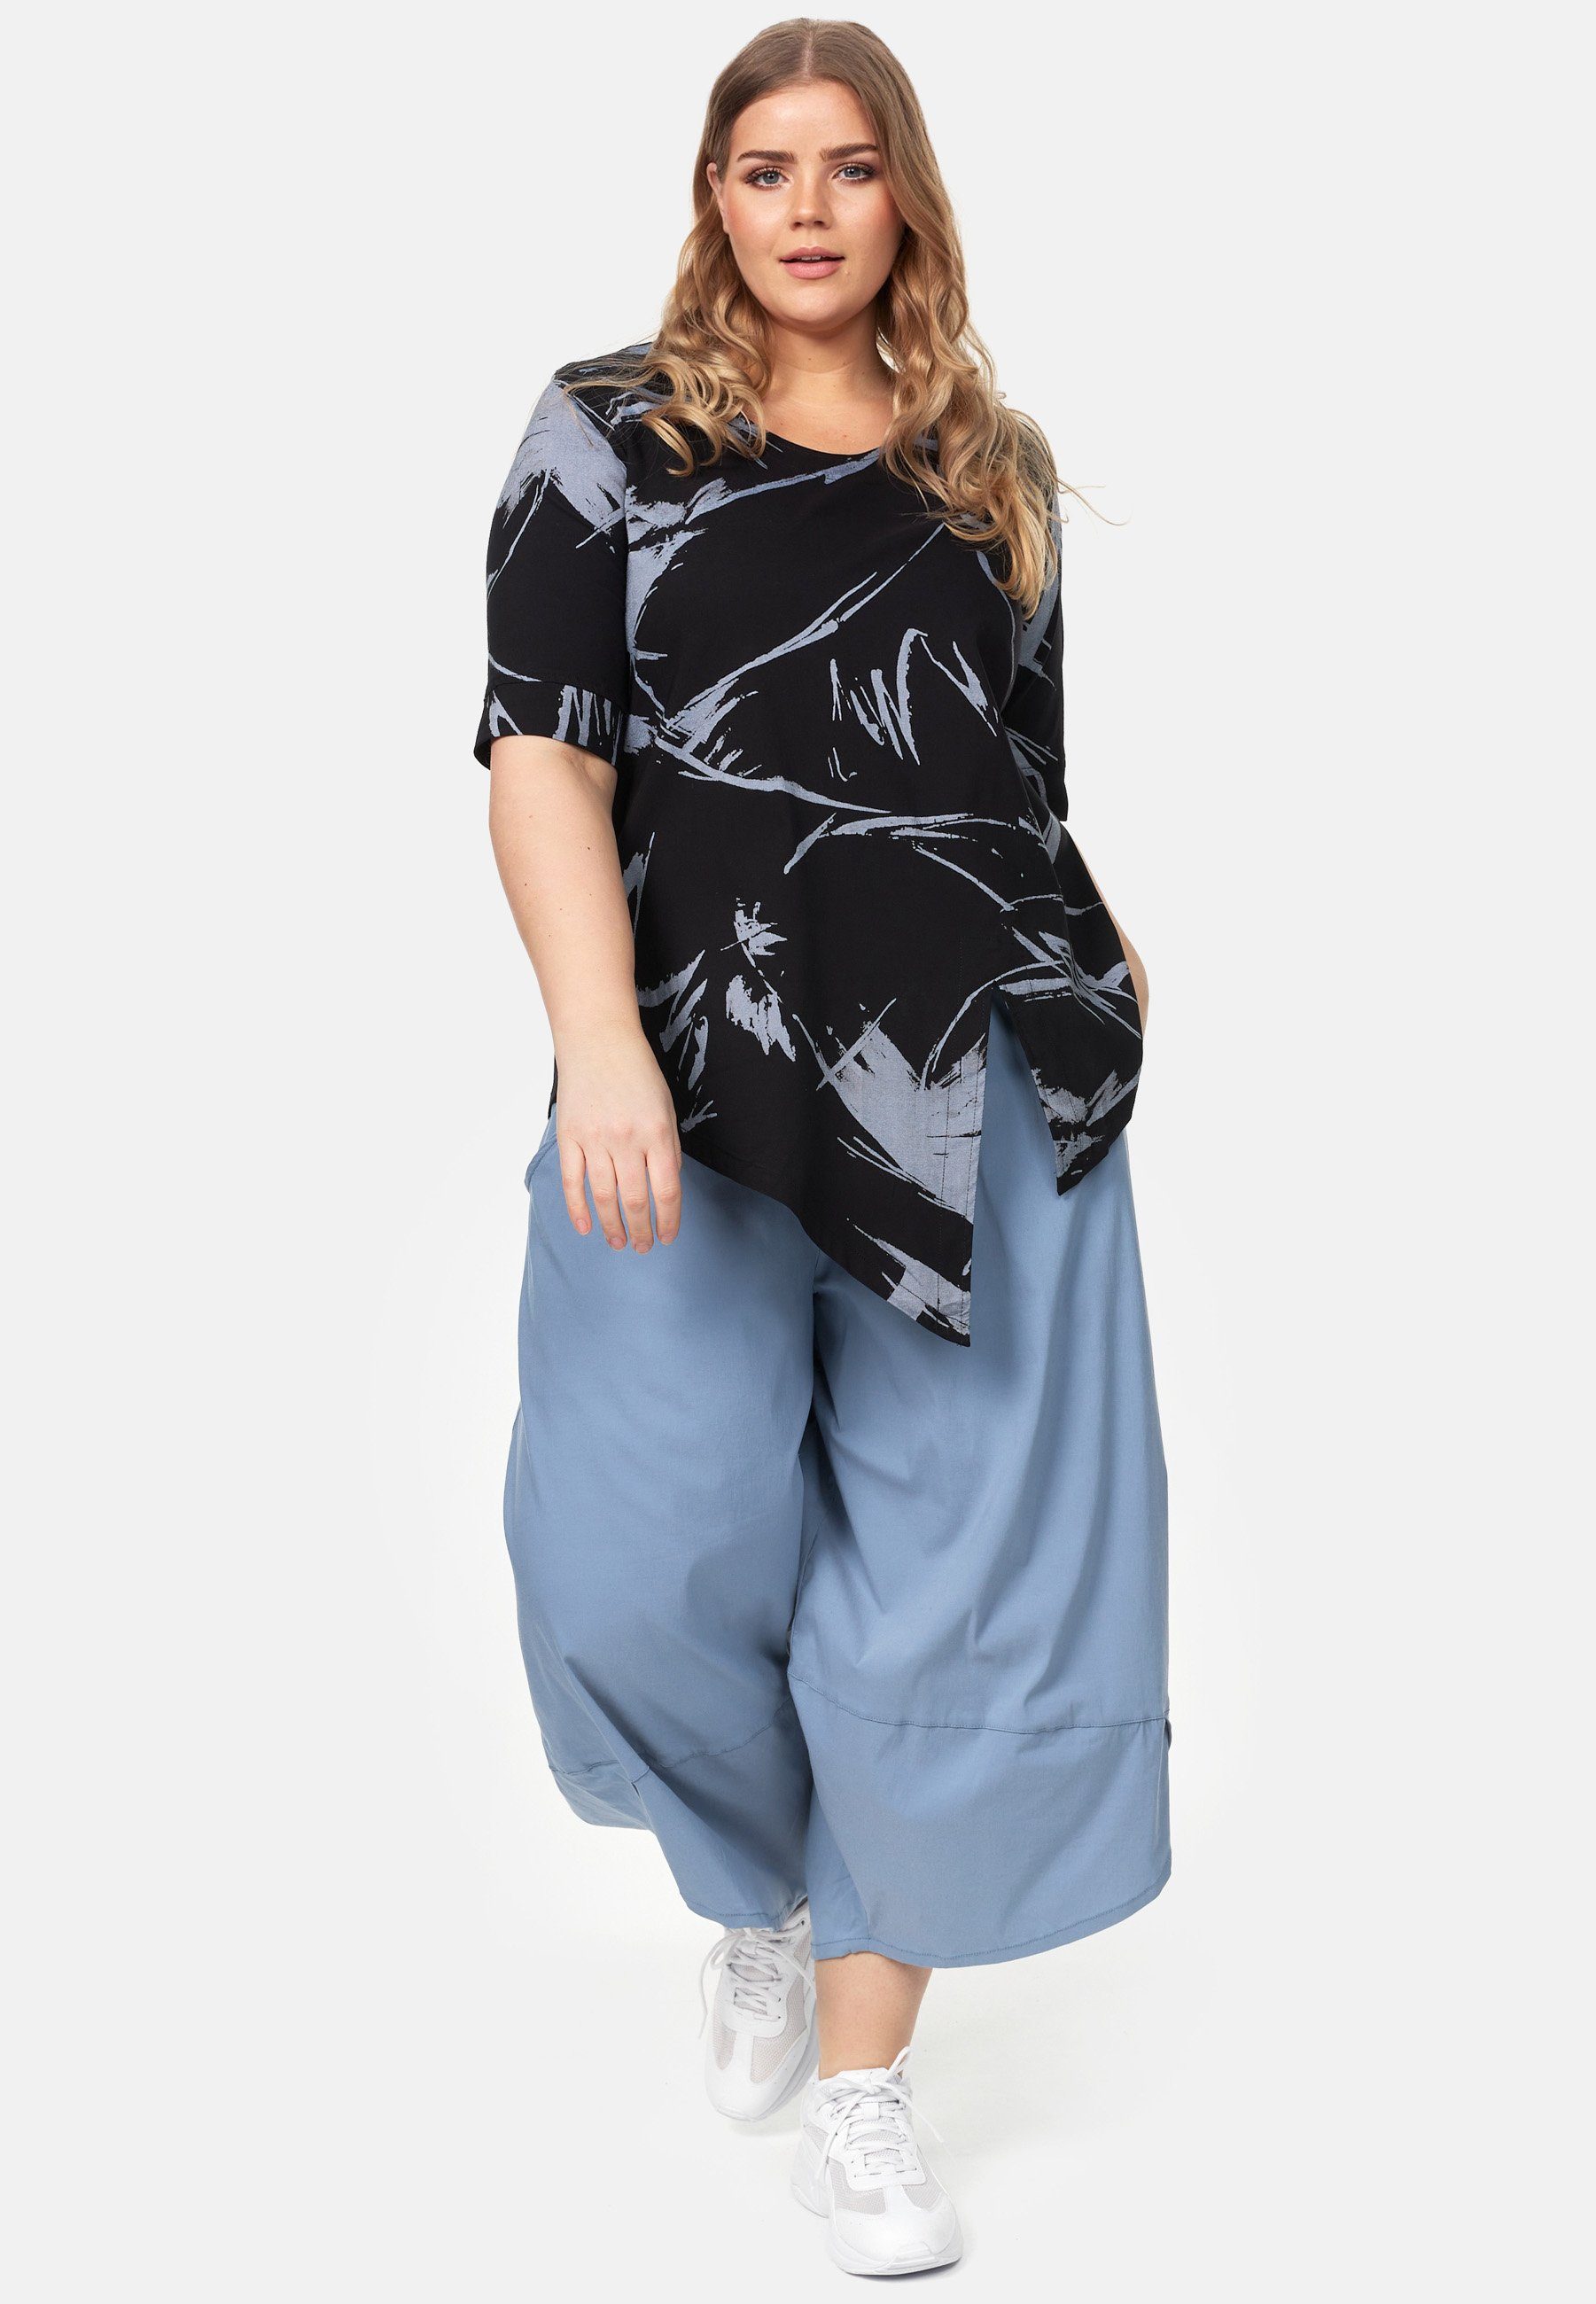 'Flora' A-Line Tunikashirt Schwarz Saum asymmetrischem Kekoo in Shirt Tunika mit Muster